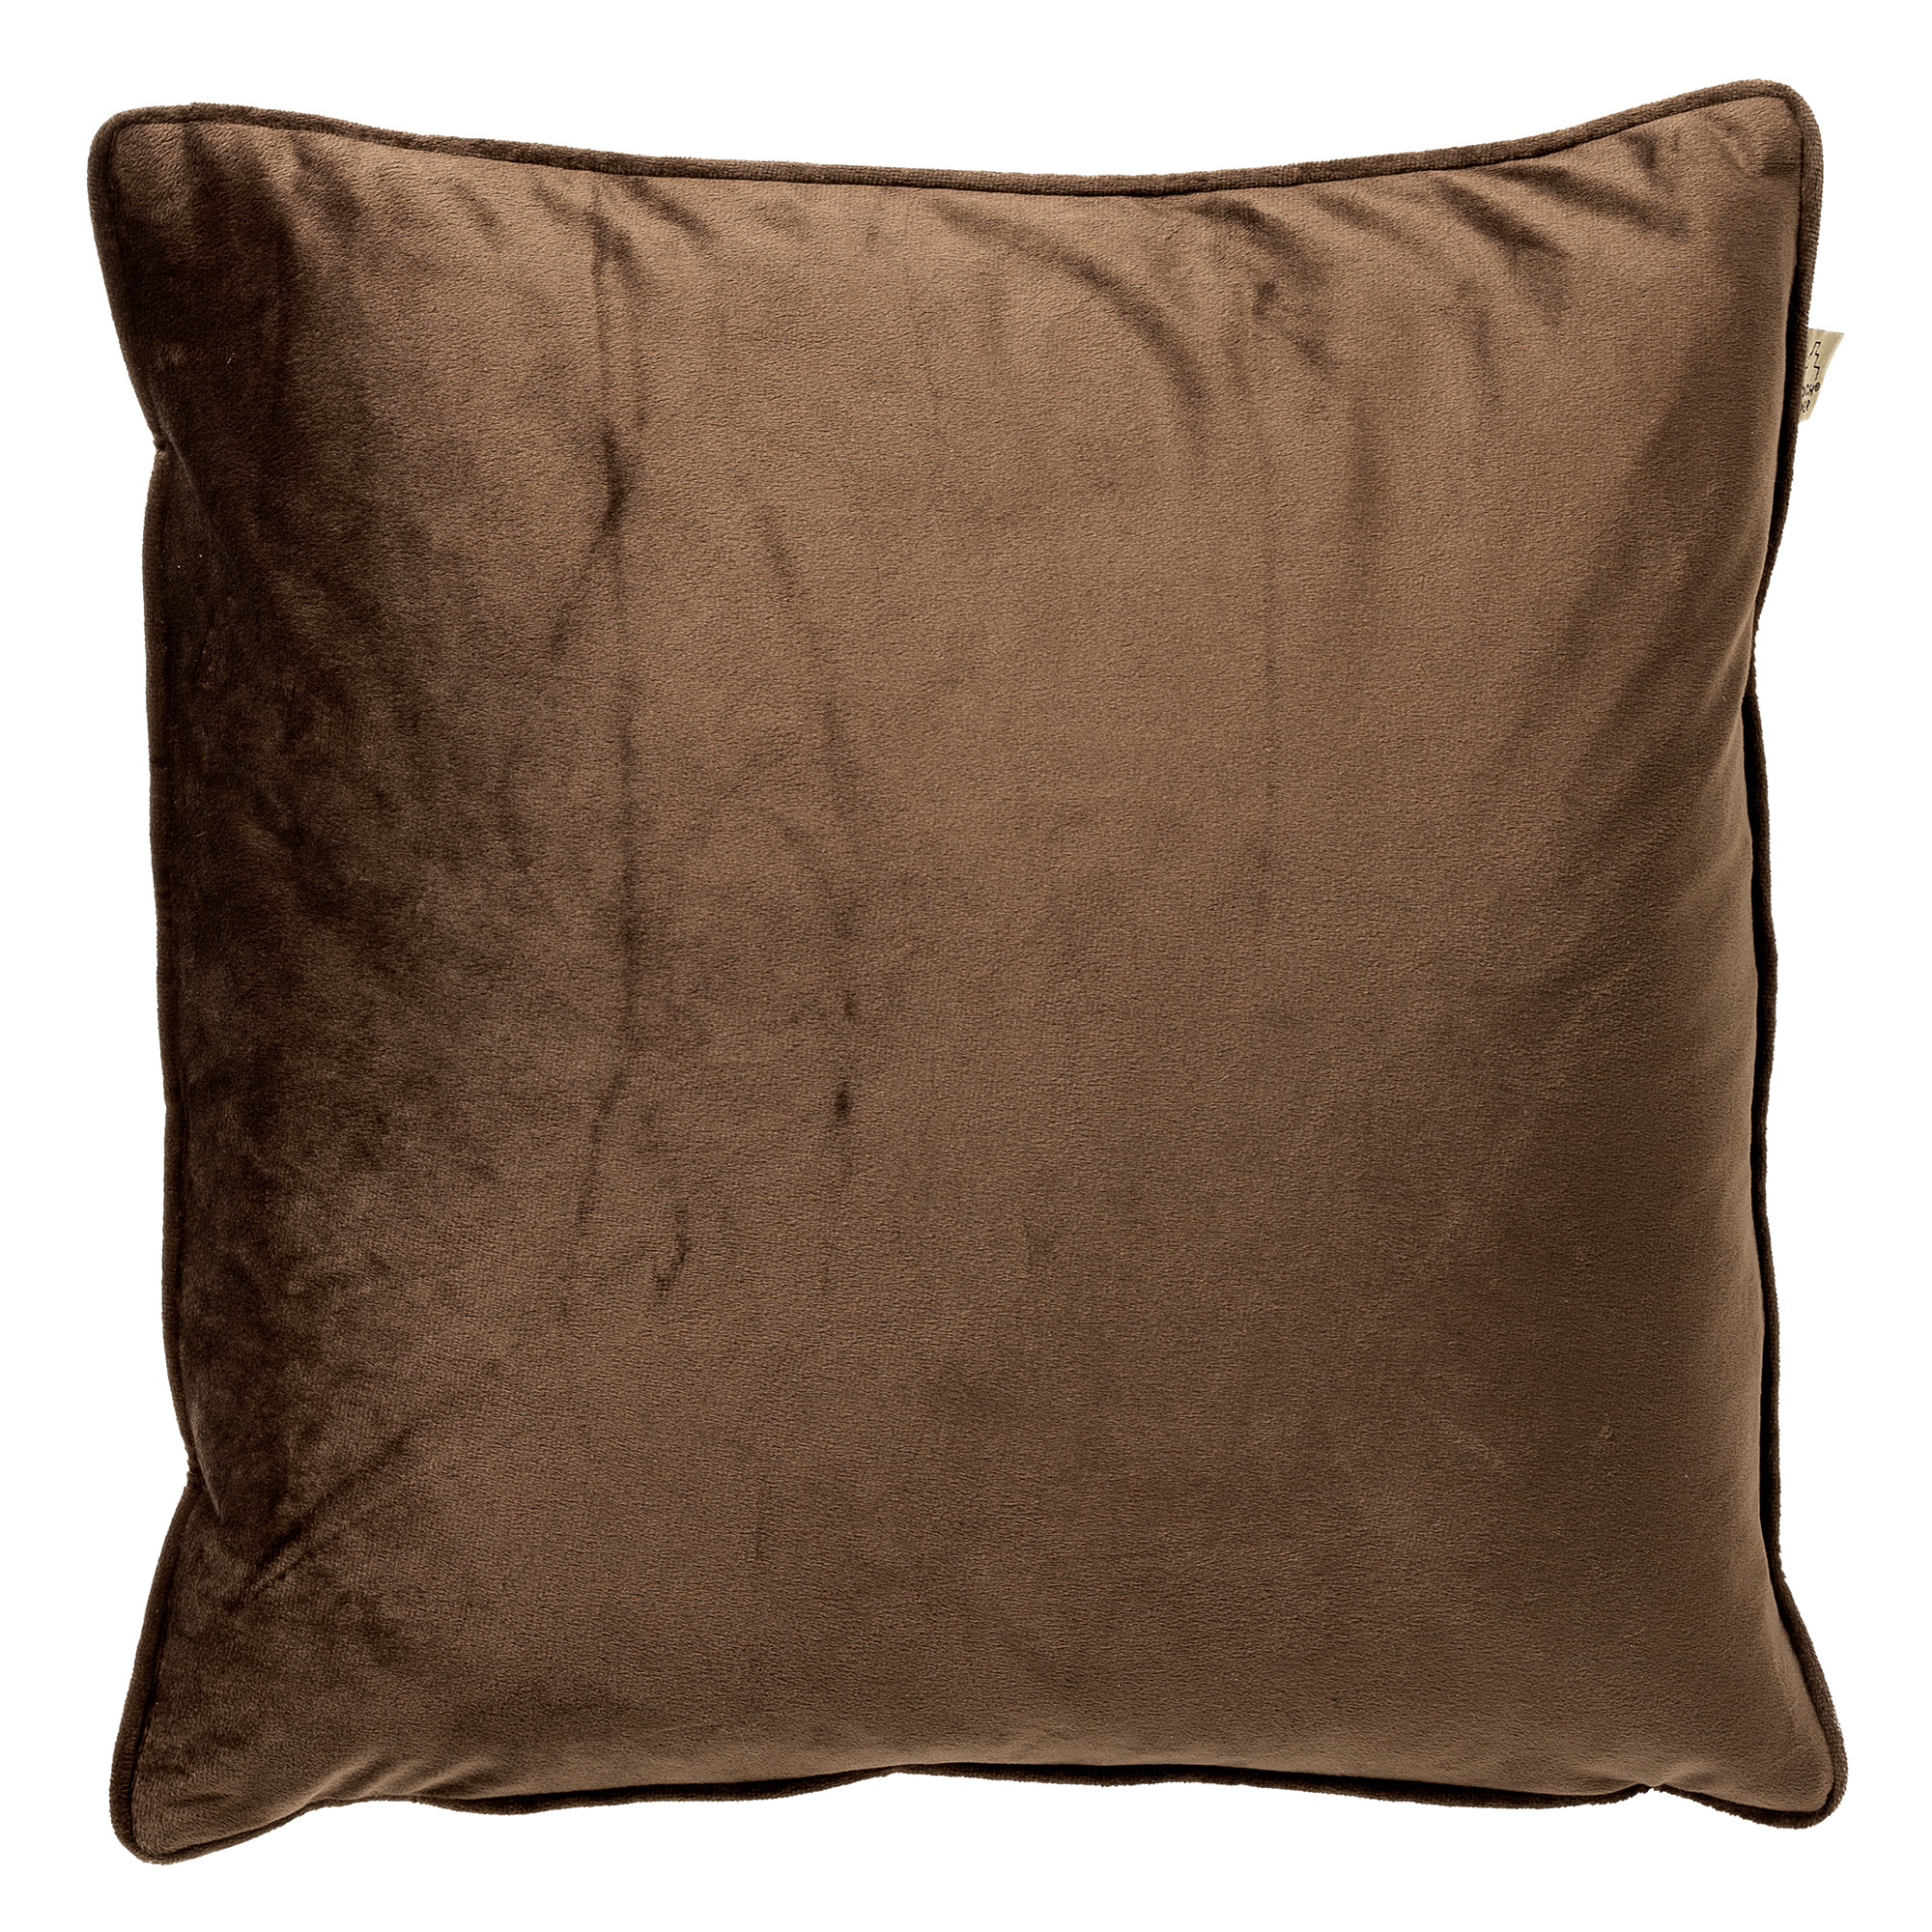 FINN - Cushion 45x45 cm - Chocolate Martini - brown